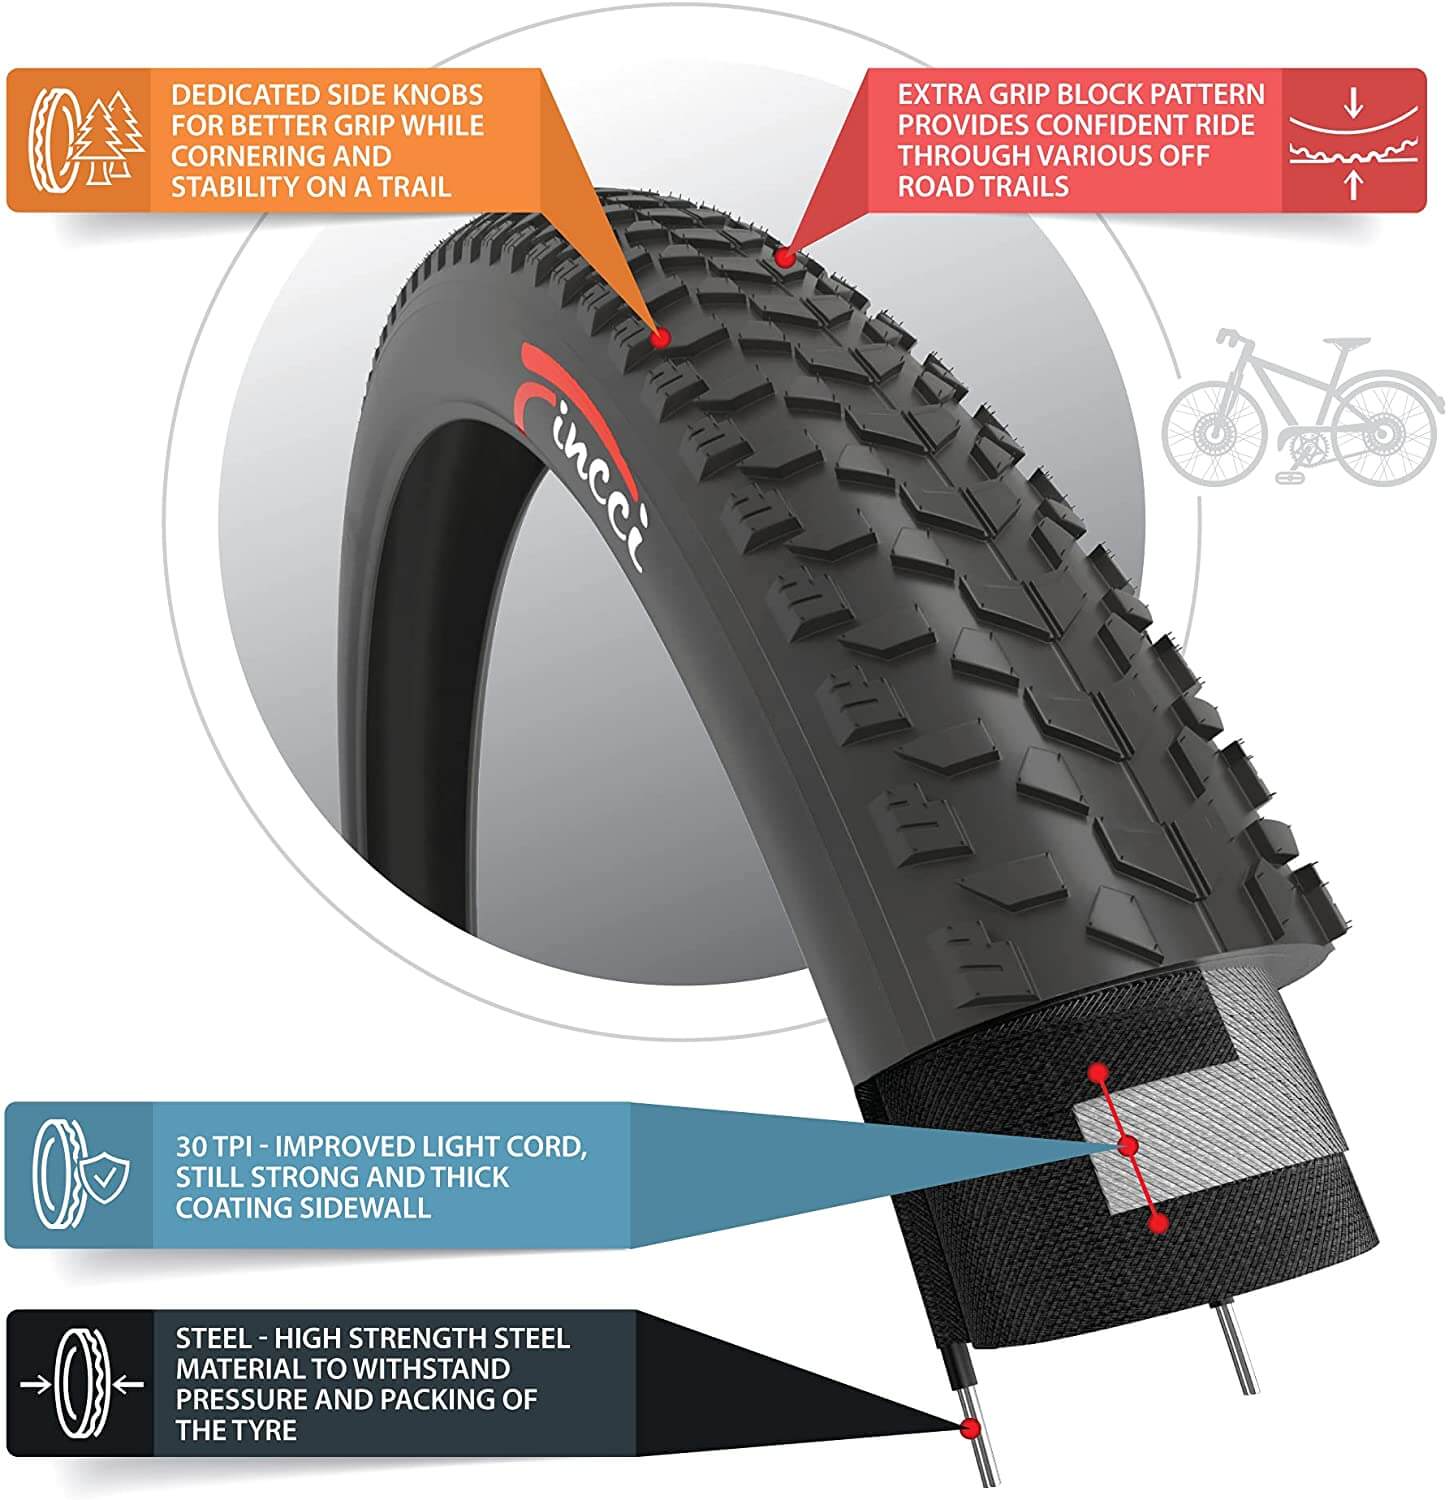 Fincci Fat 26 x 4.0 100-559 MTB Tyre - Buy in Online Shop